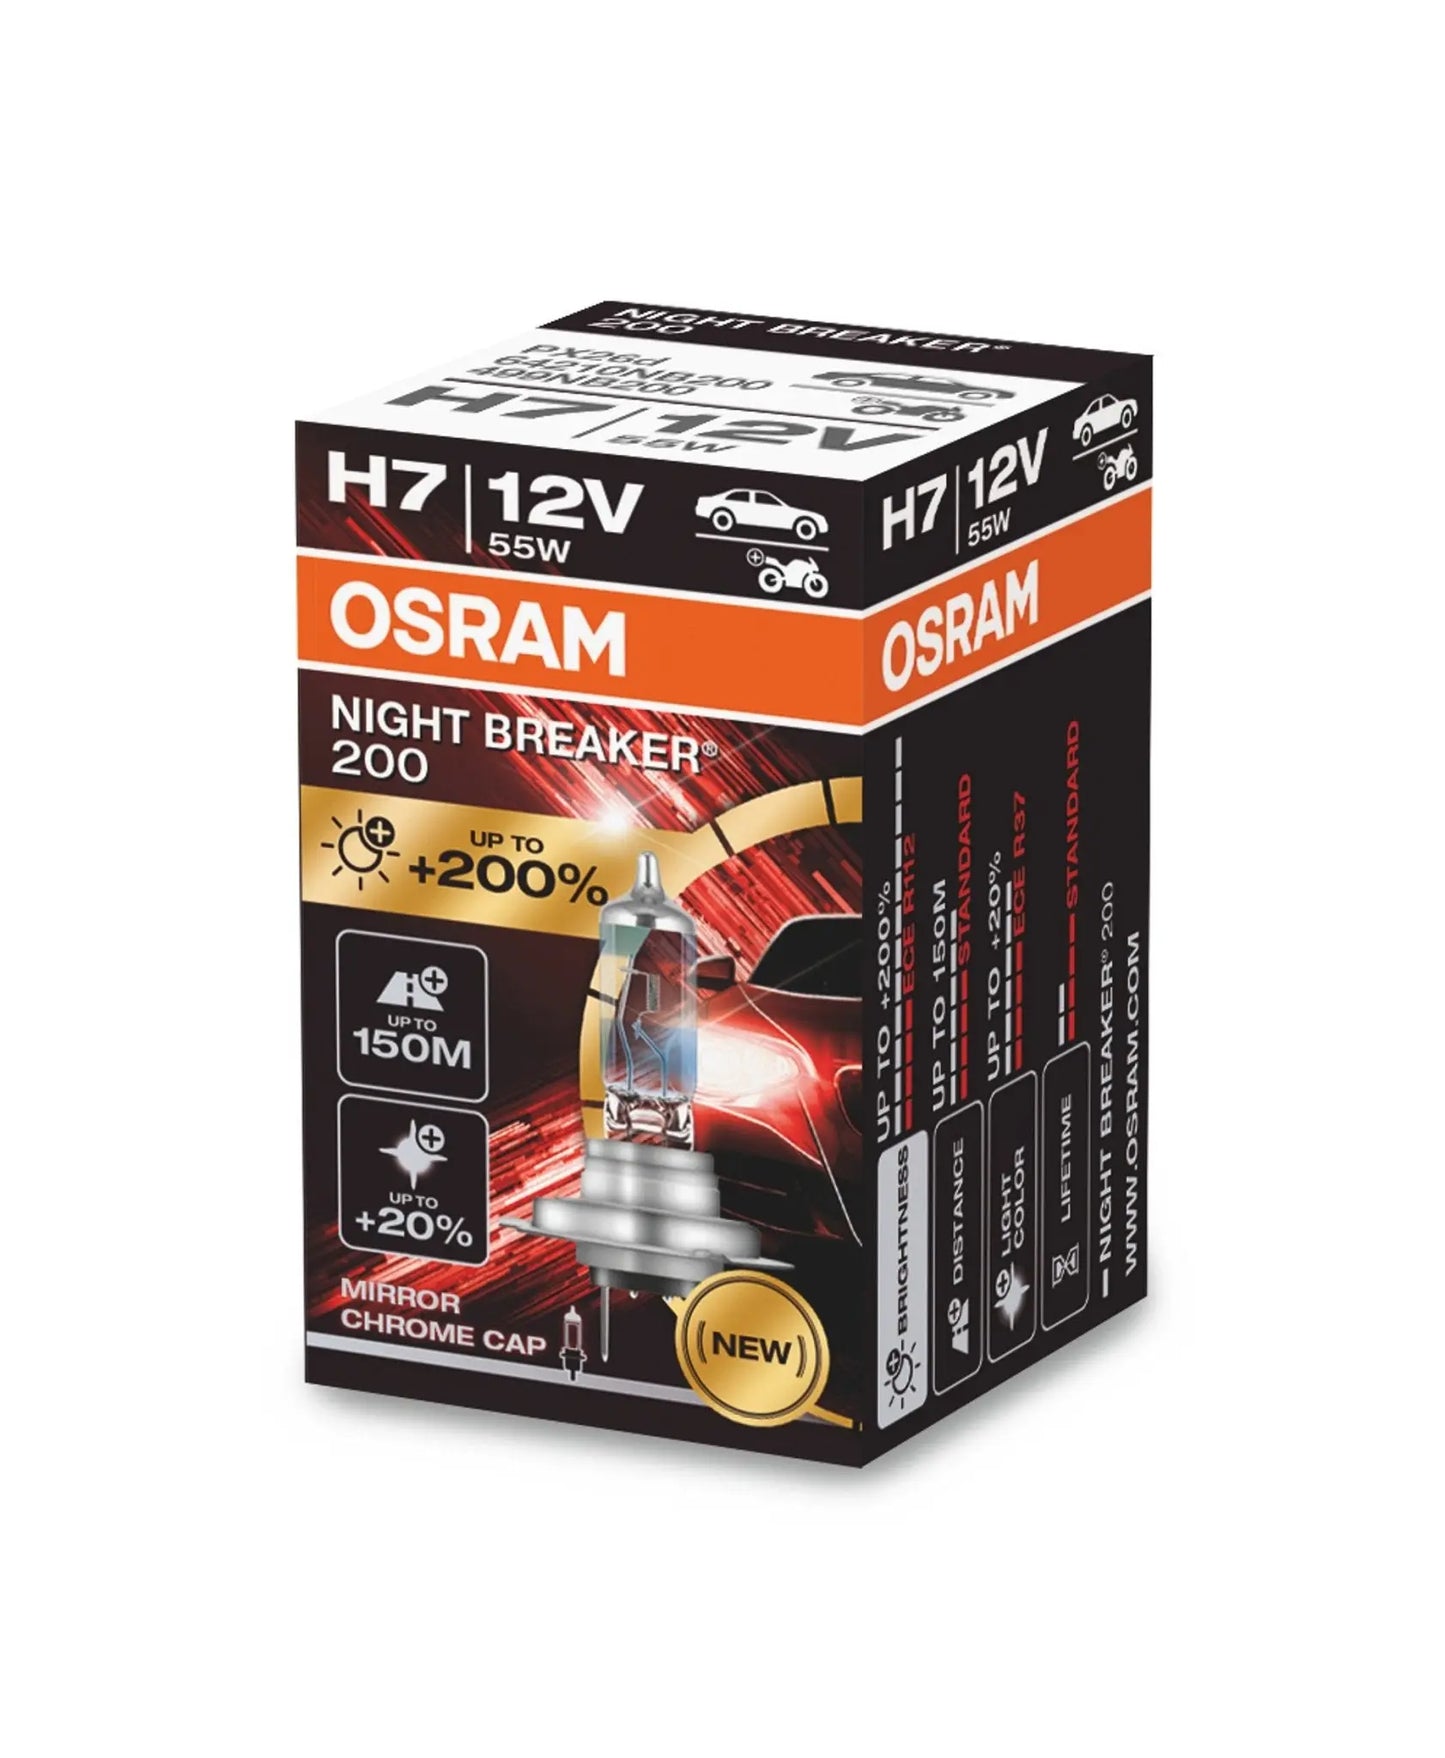 H7 12V 55W PX26d NIGHT BREAKER® 200 +200% 1St. OSRAM - Samsuns Group